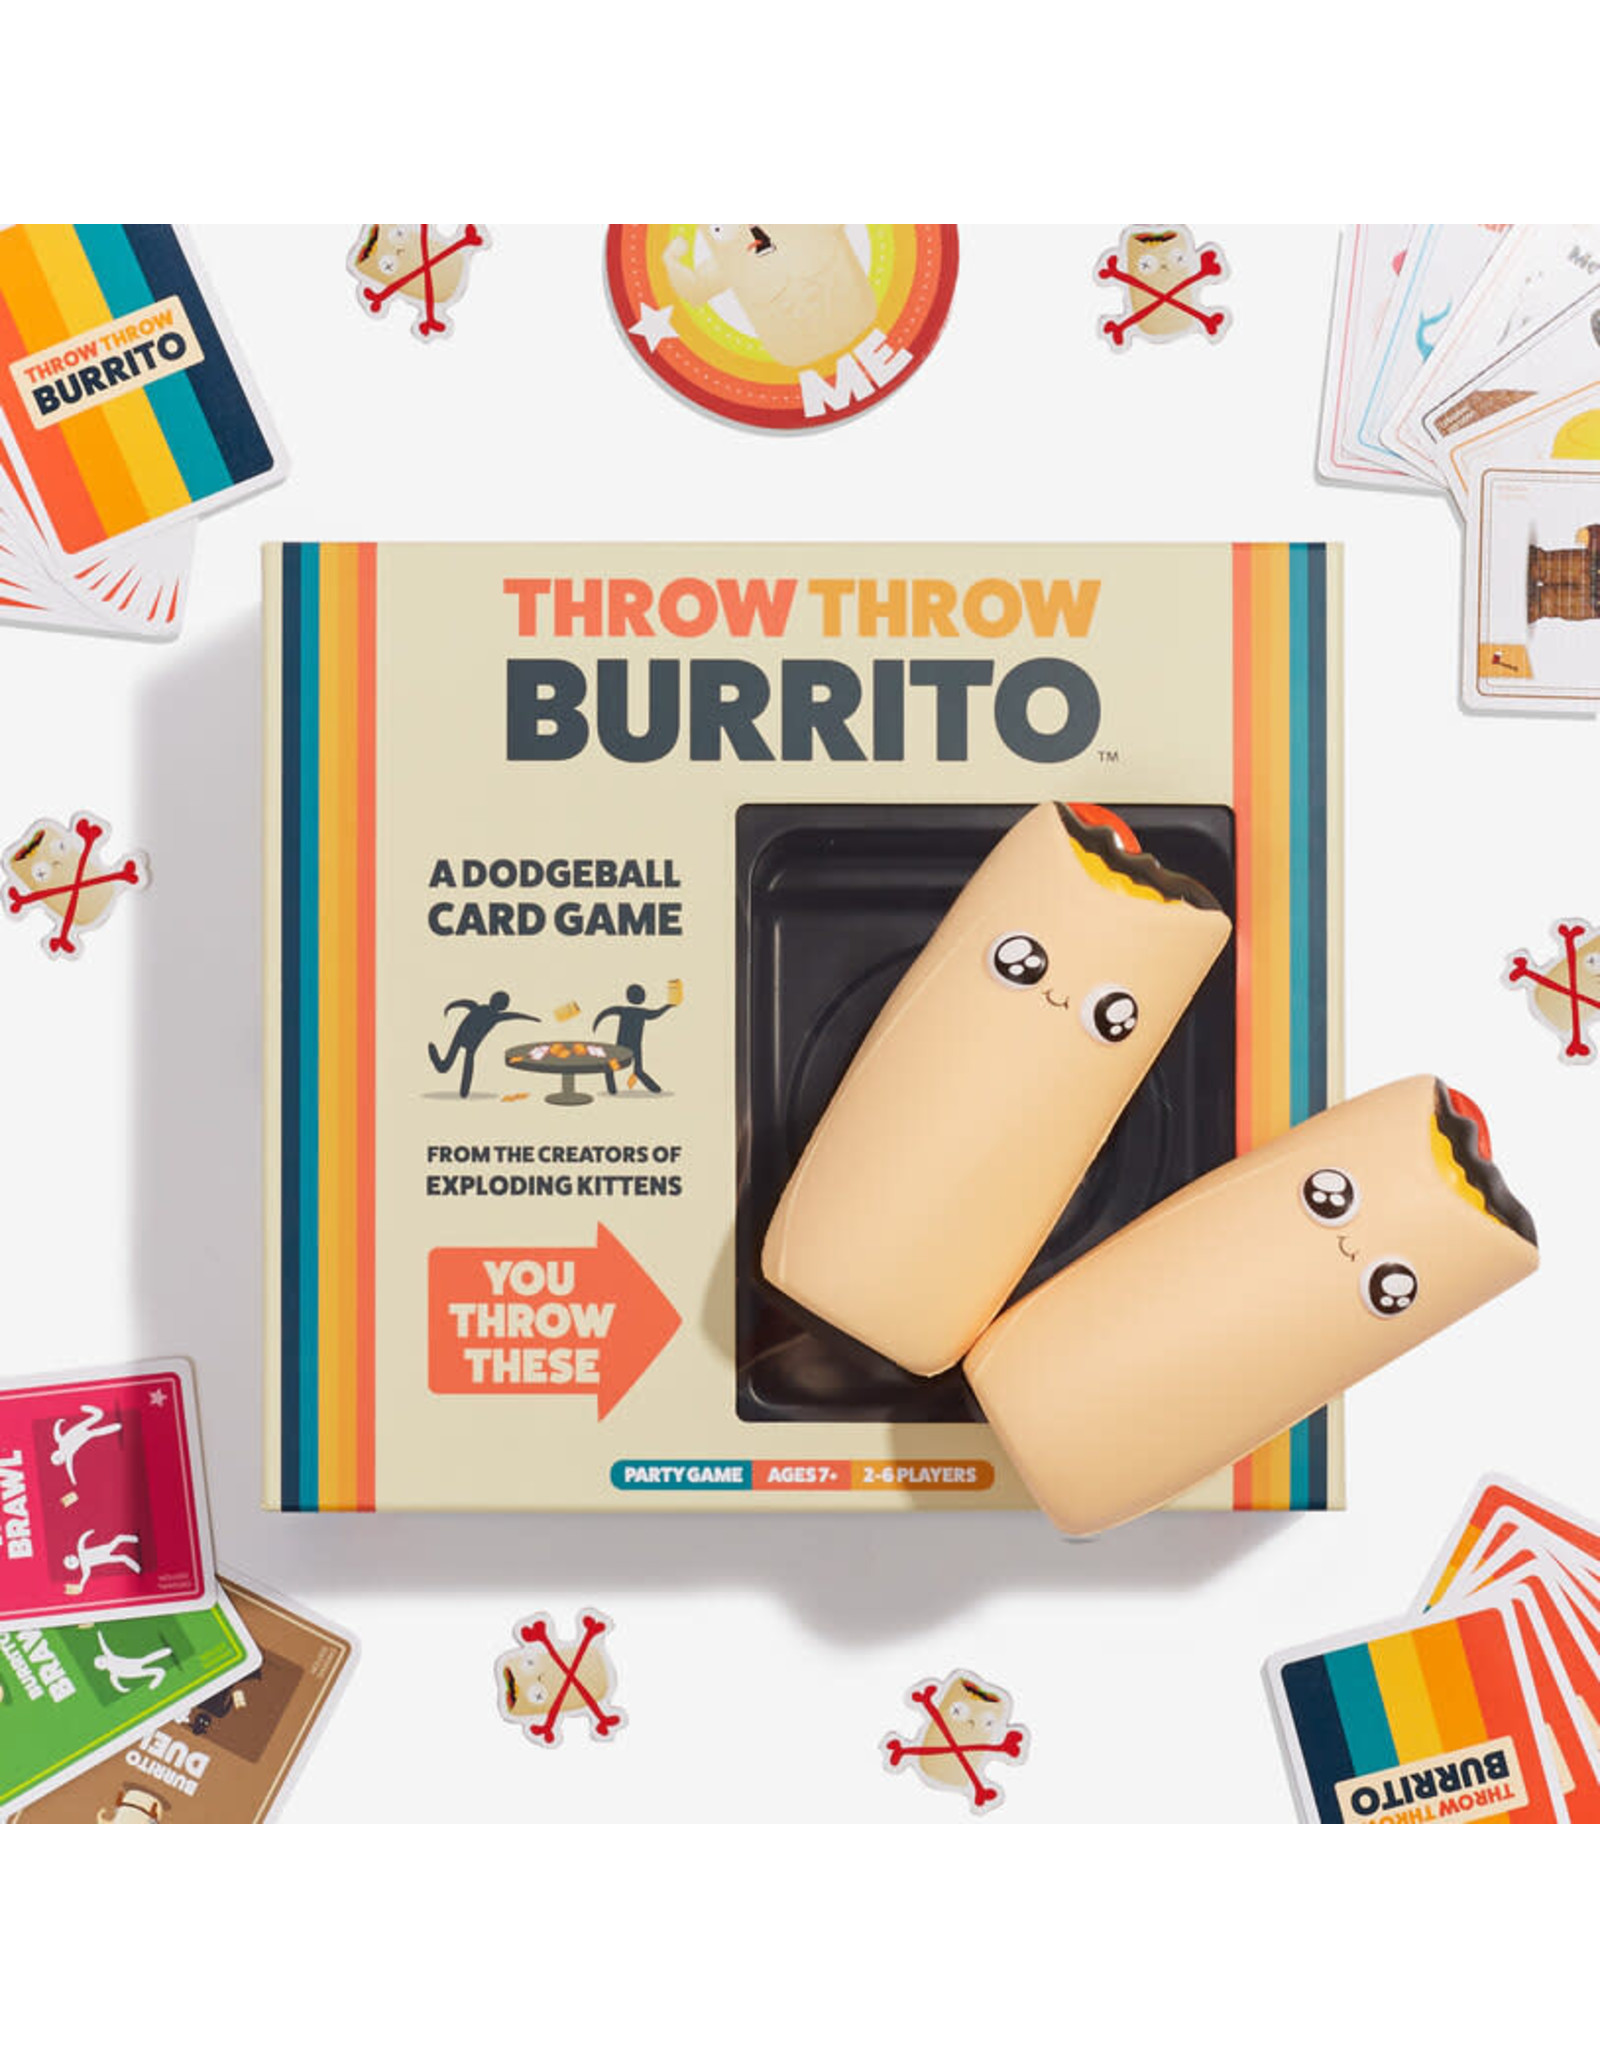 target burrito throwing game